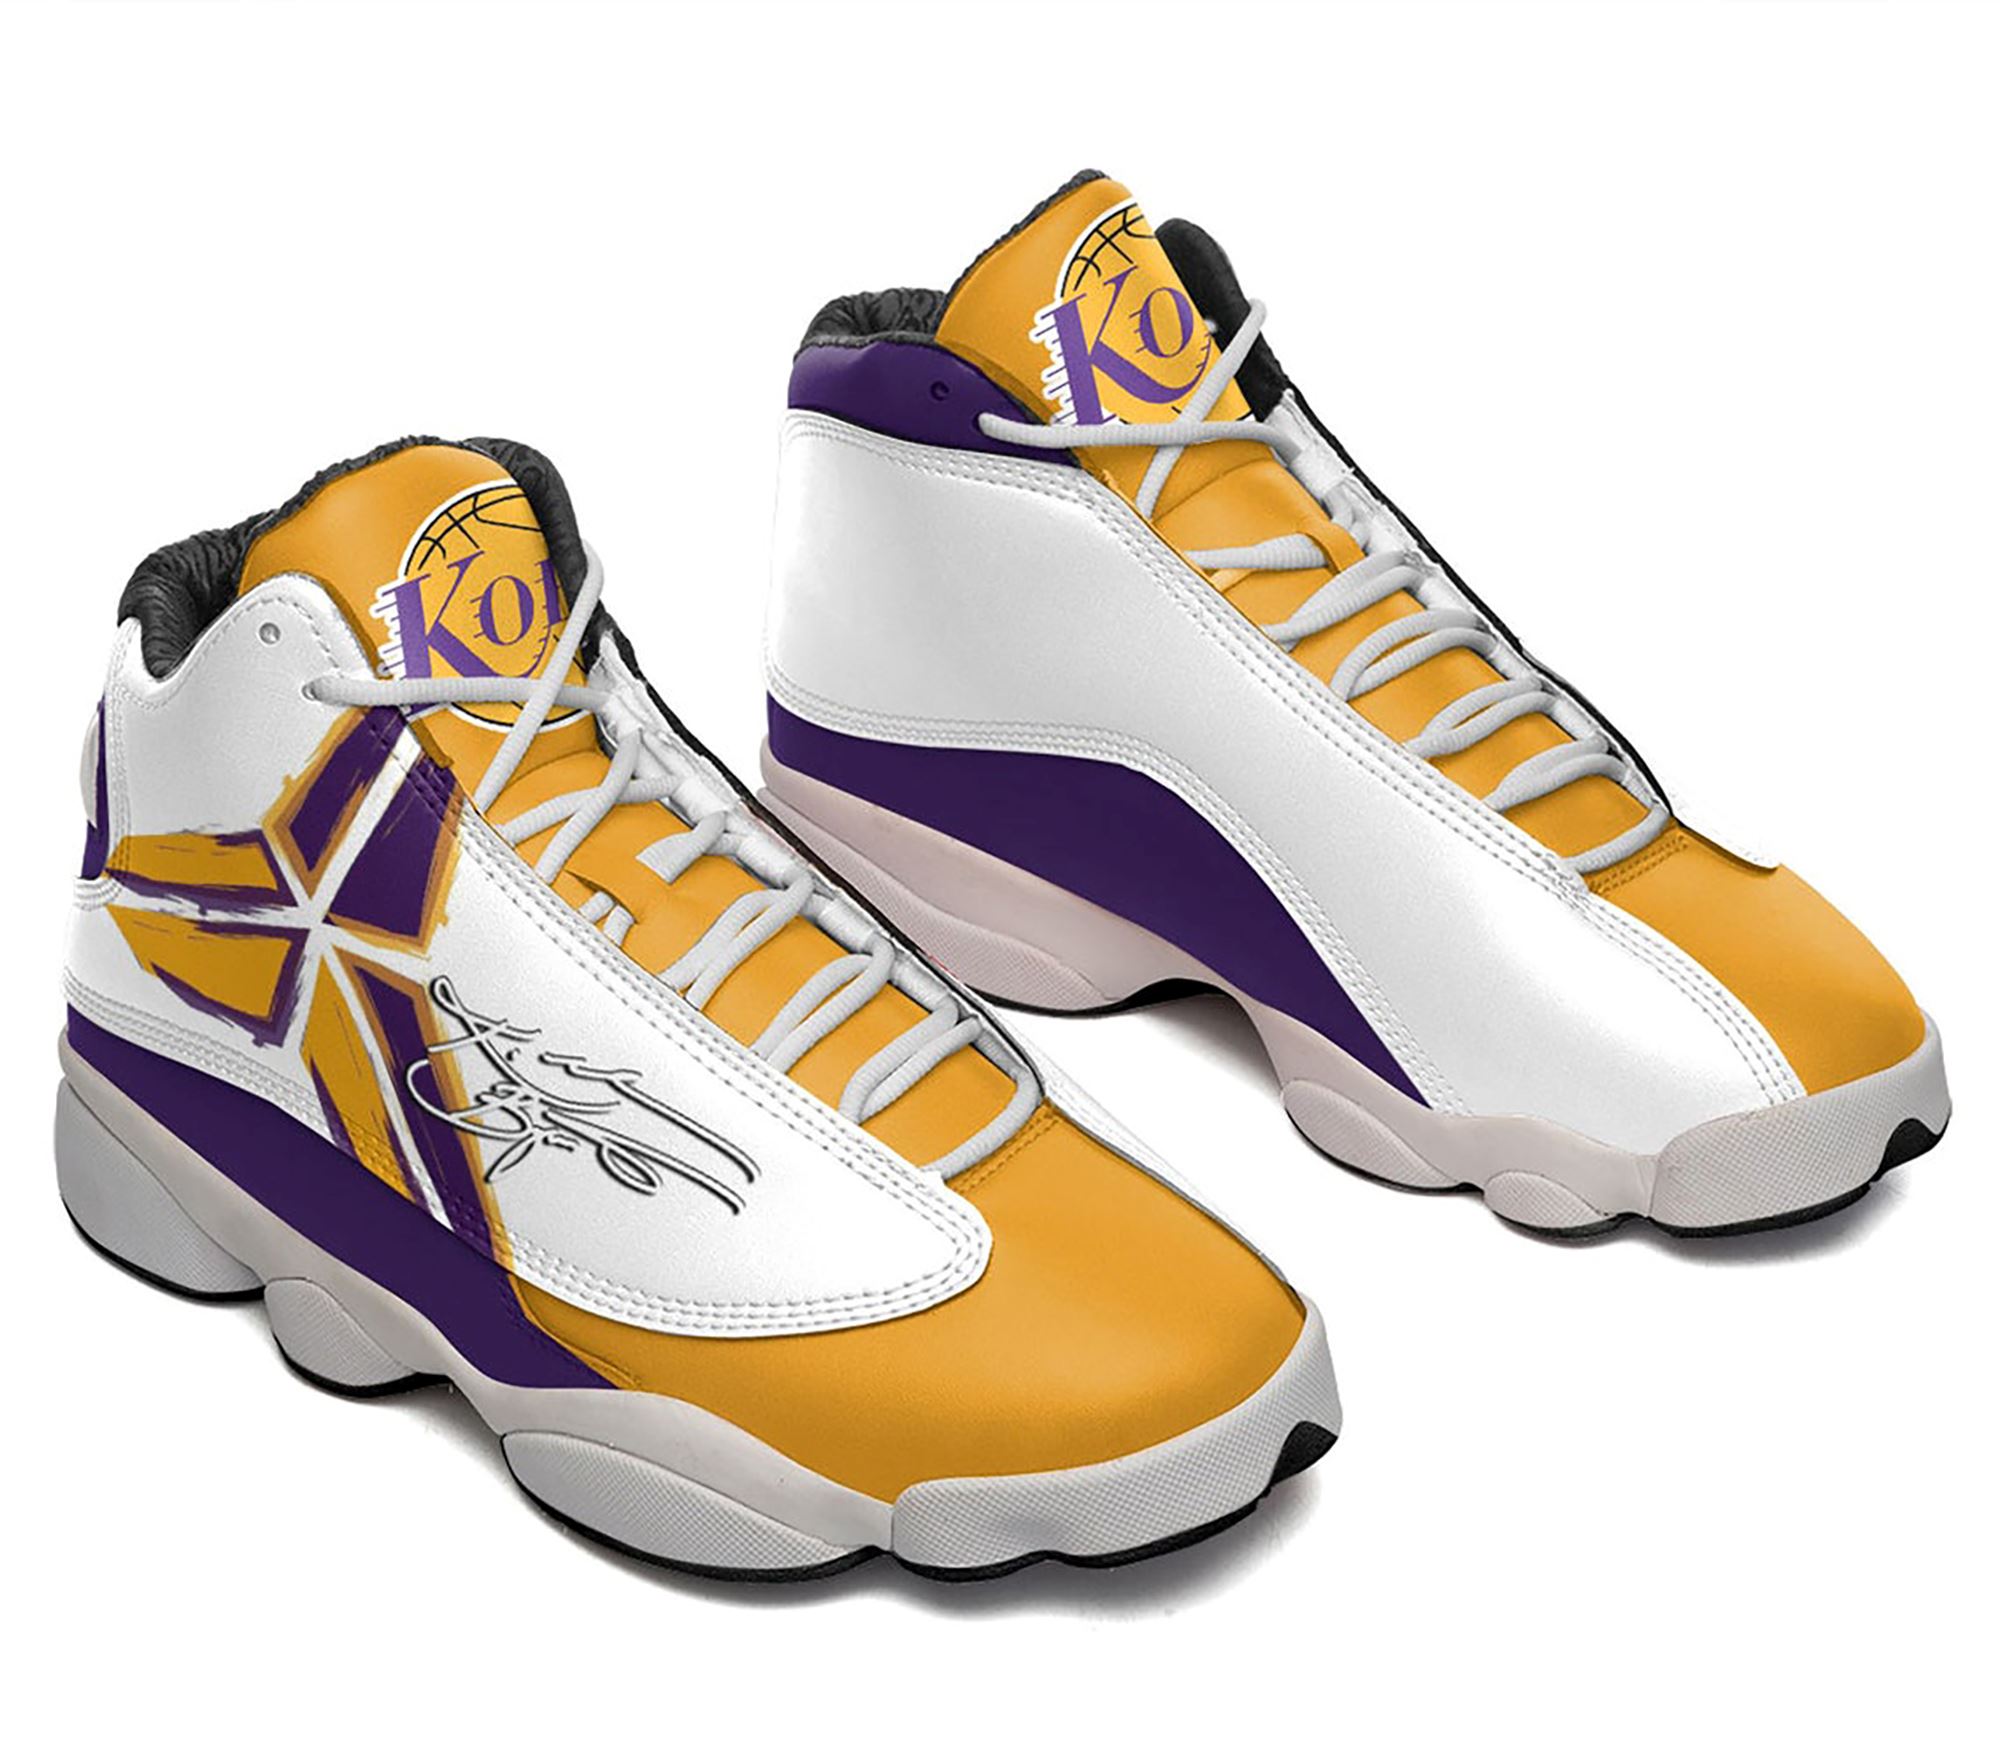 Kobe Bryant Jordan 13 Shoes For Men And Women Jordan 13 Shoe Kobe Bryant Shoe Basketball Shoe